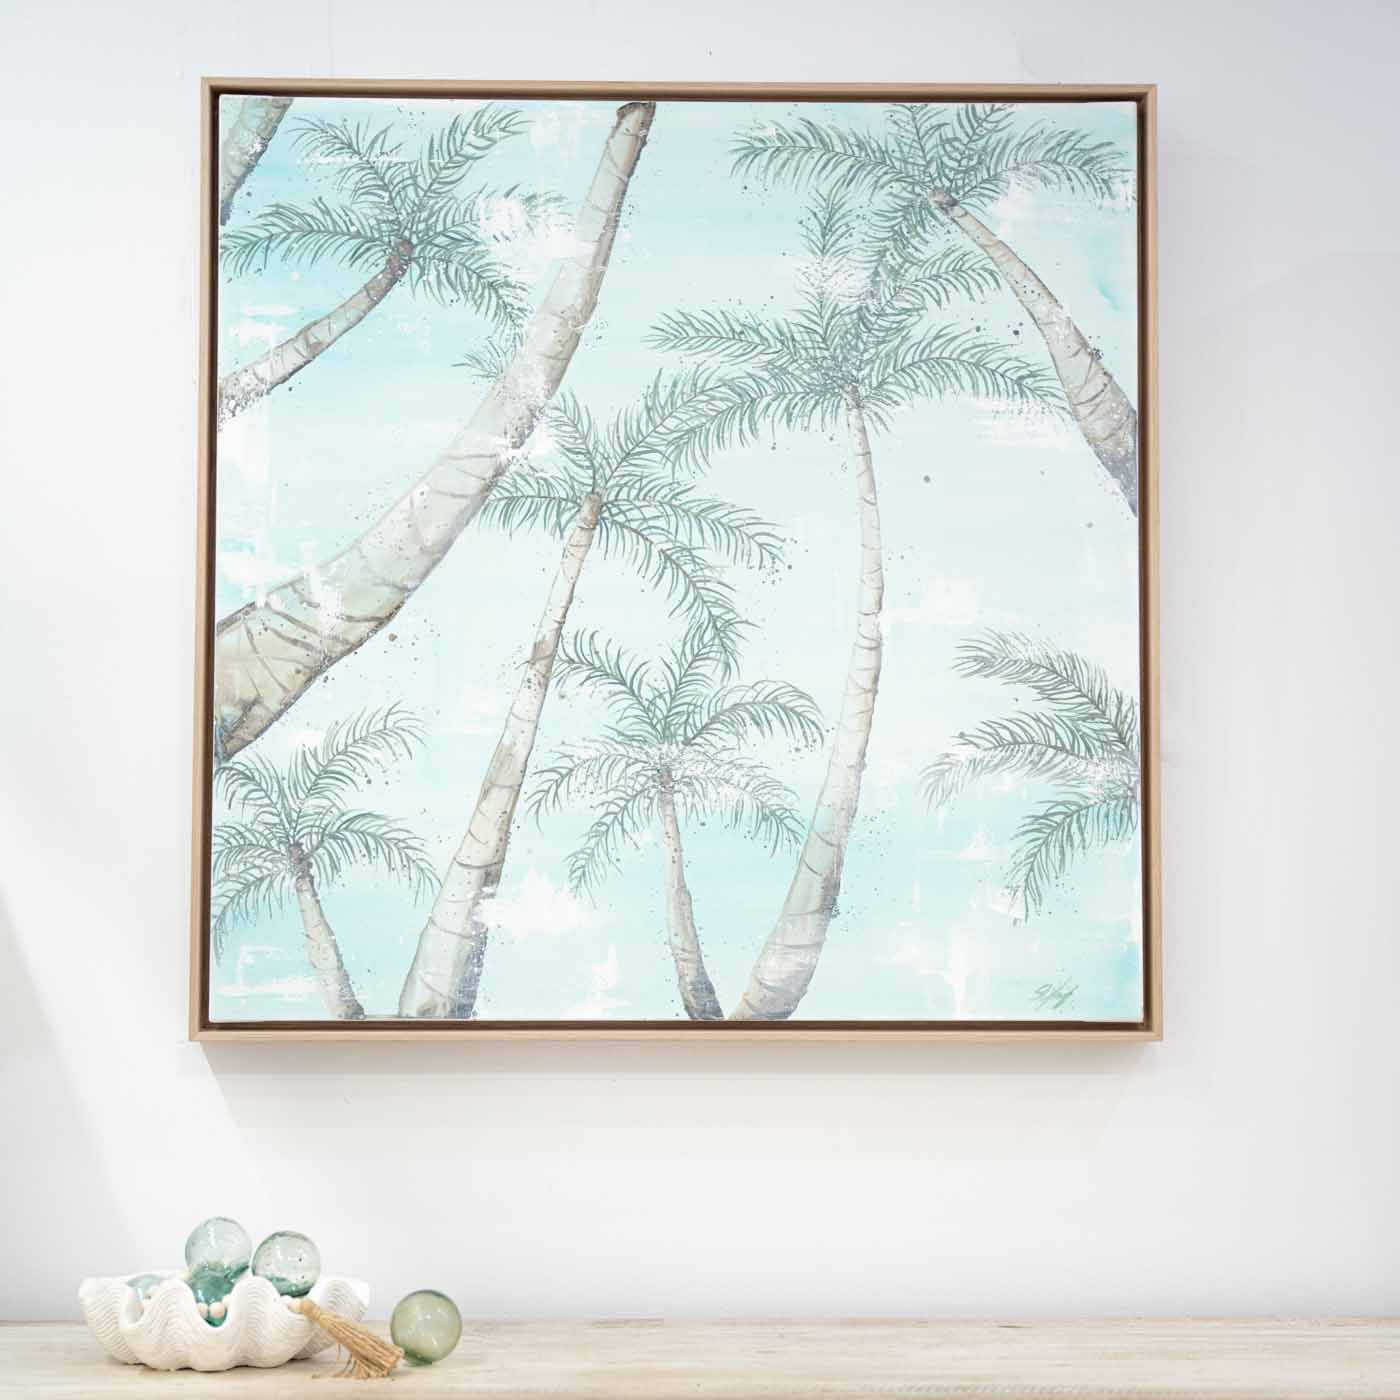 Port Douglas Palm Trees Framed Original Artwork